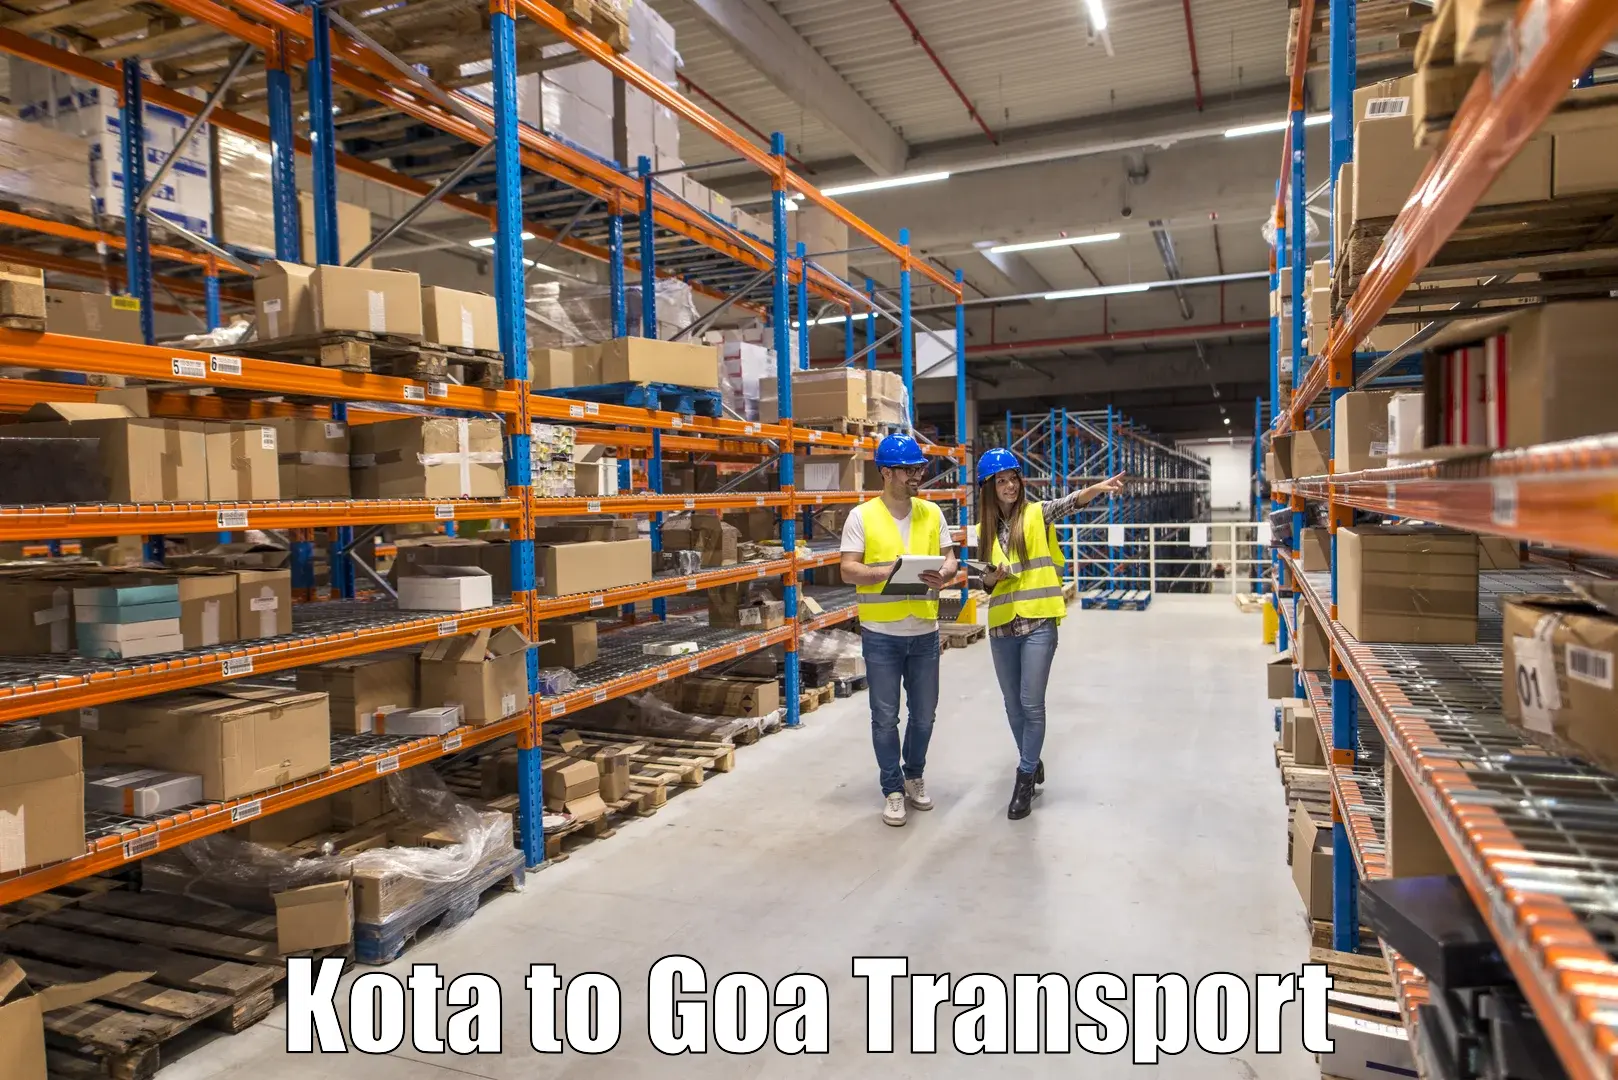 Nearby transport service Kota to Goa University